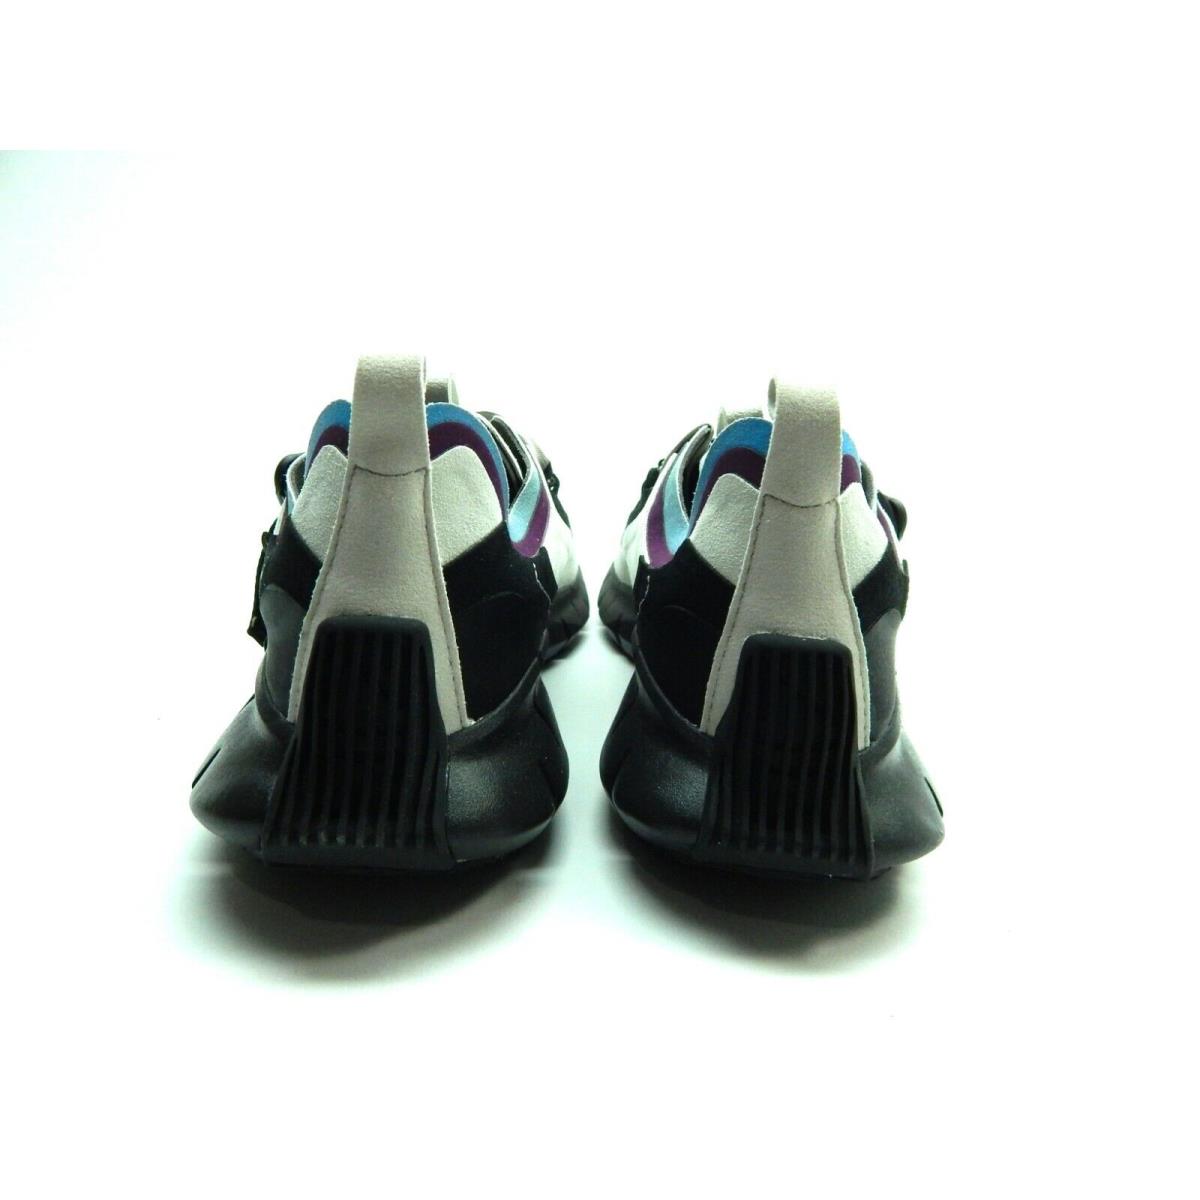 Reebok shoes ZIG KINETICA CONCEPT - Multicolor 6